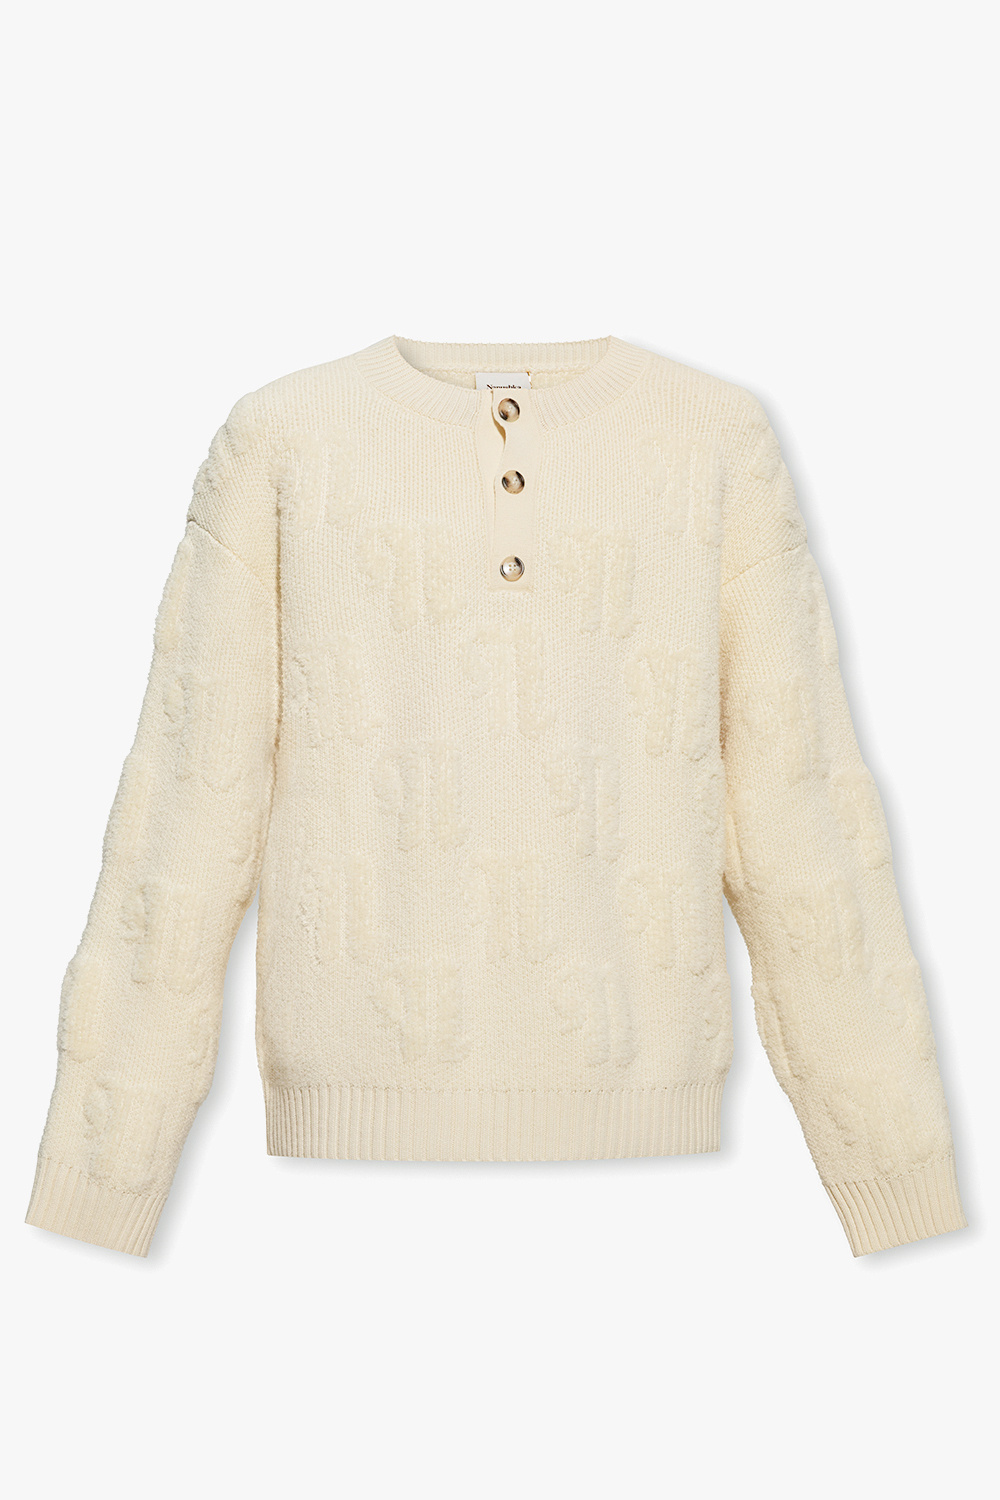 Nanushka ‘Figo’ monogrammed sweater